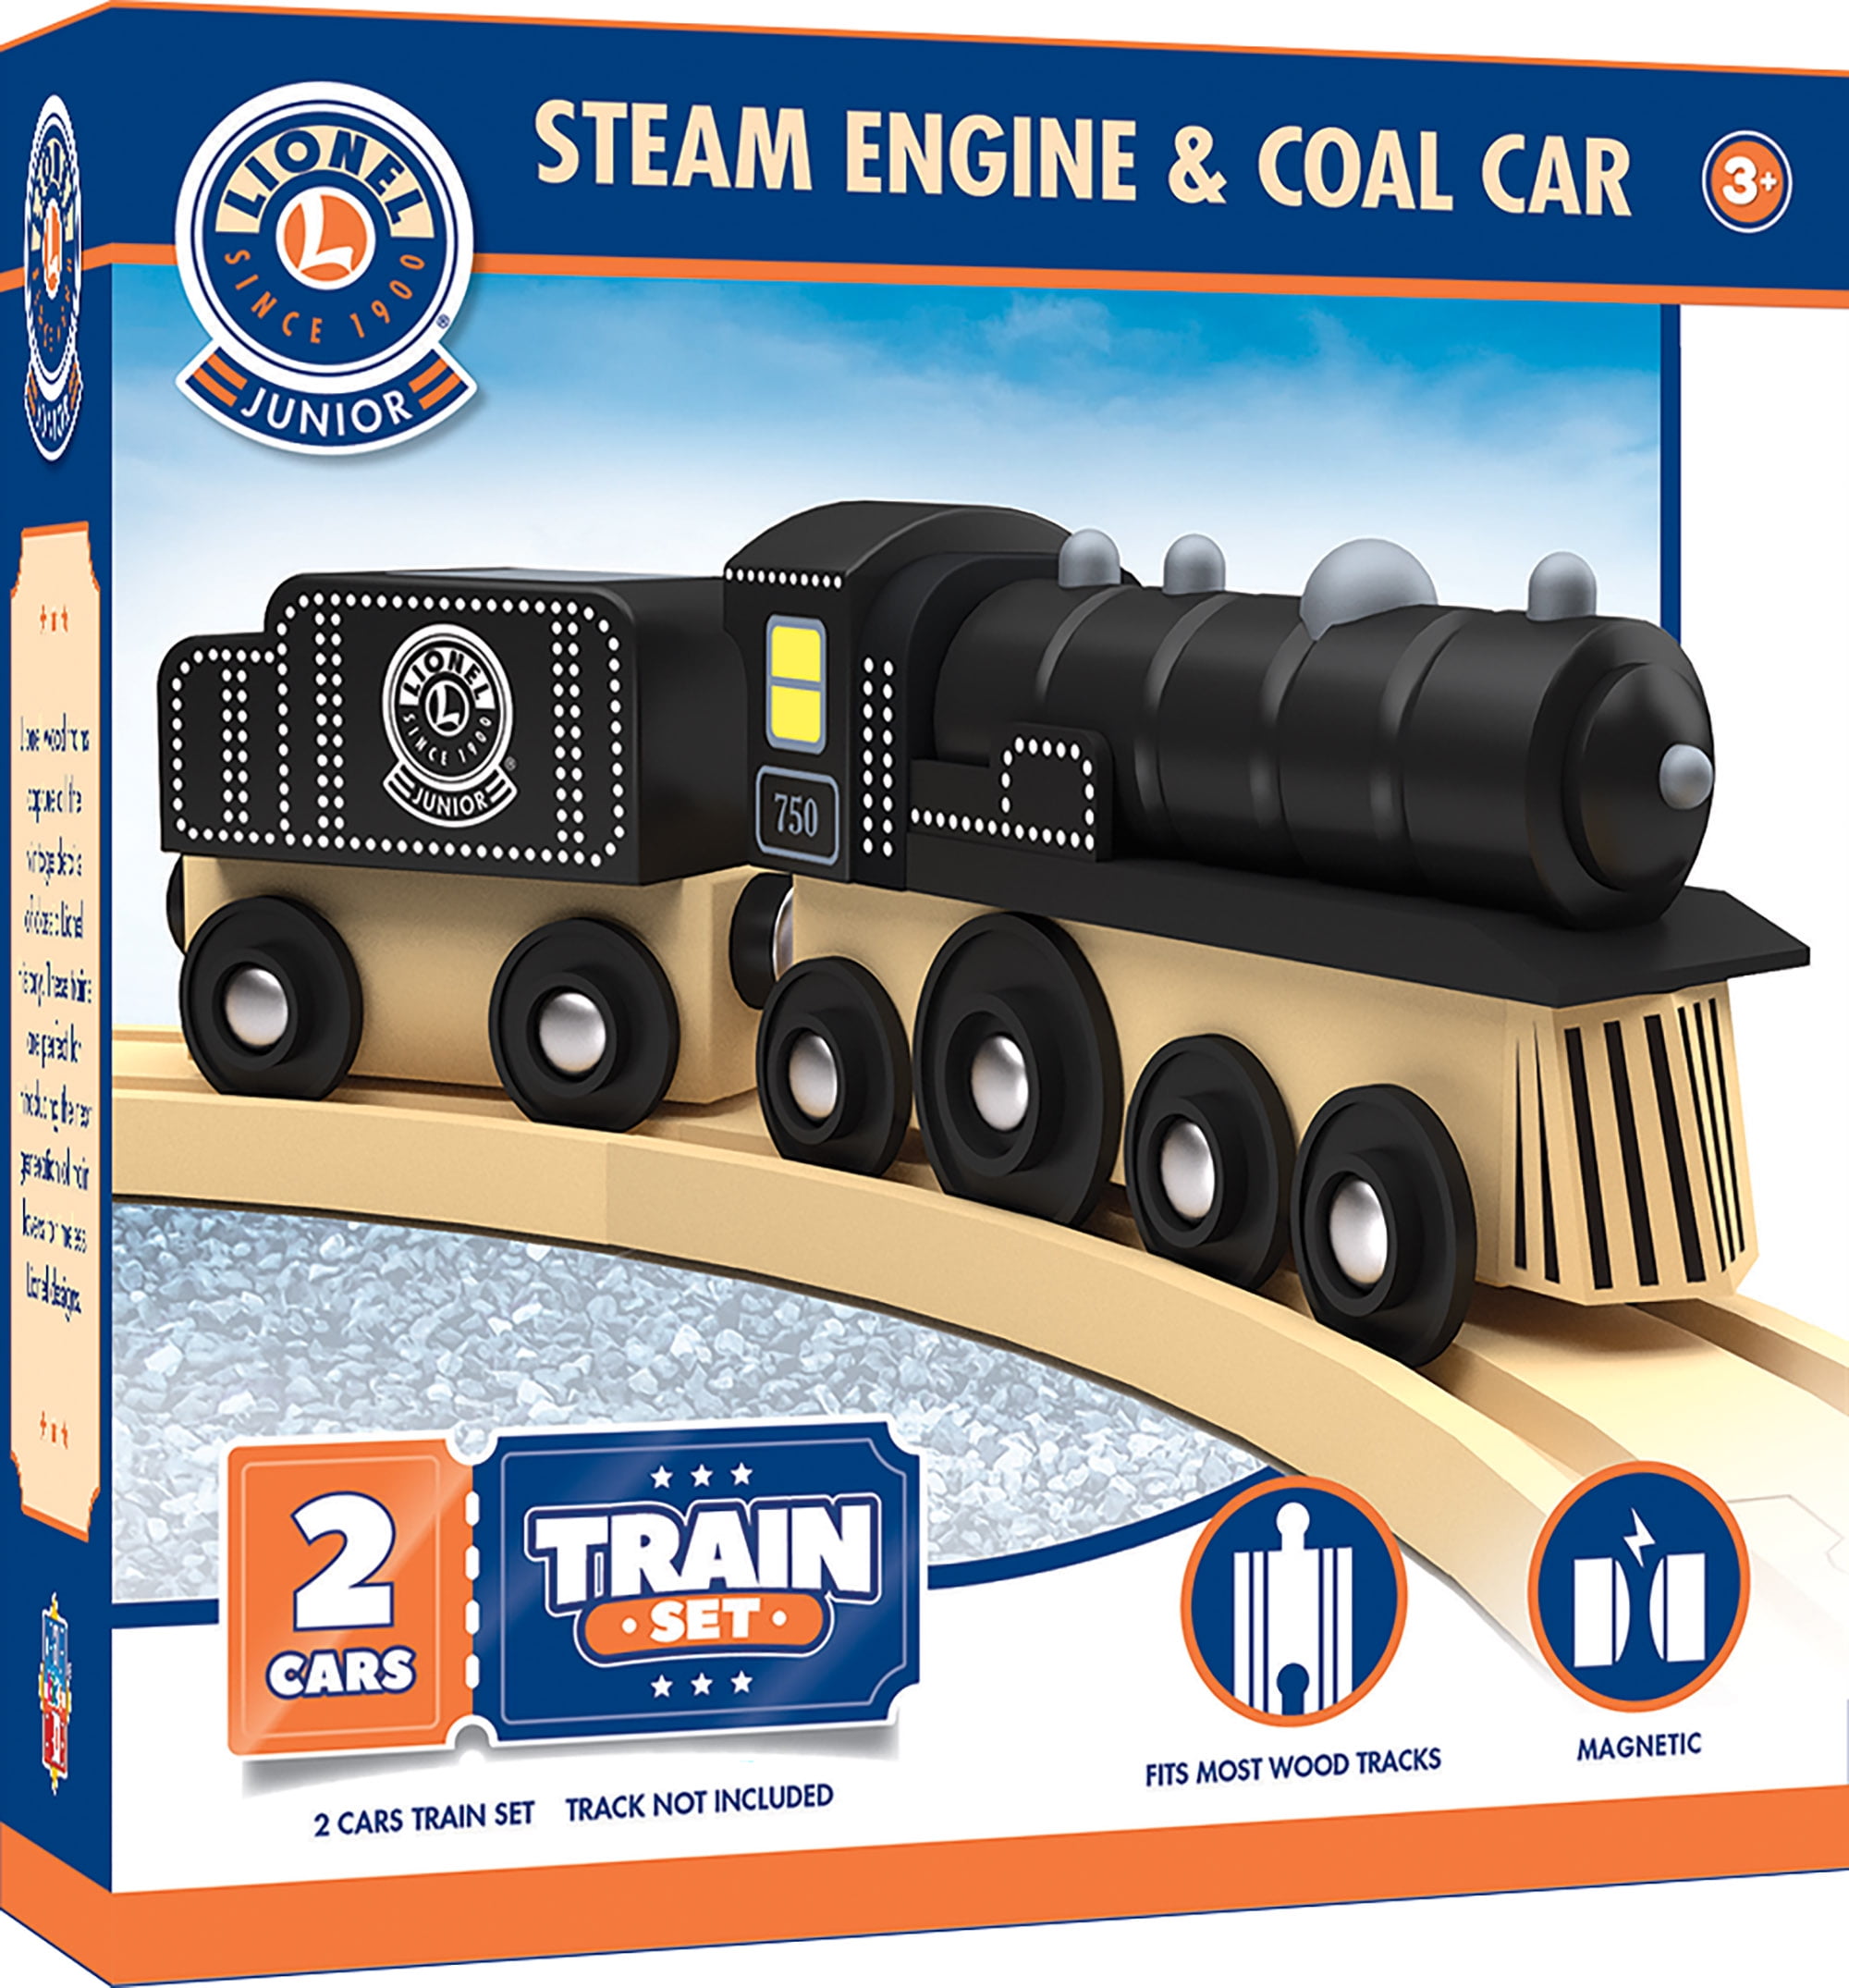 Details about   Lionel Heritage Series Santa Fe 2 Piece Wooden Train Set Engine & Passenger Car 